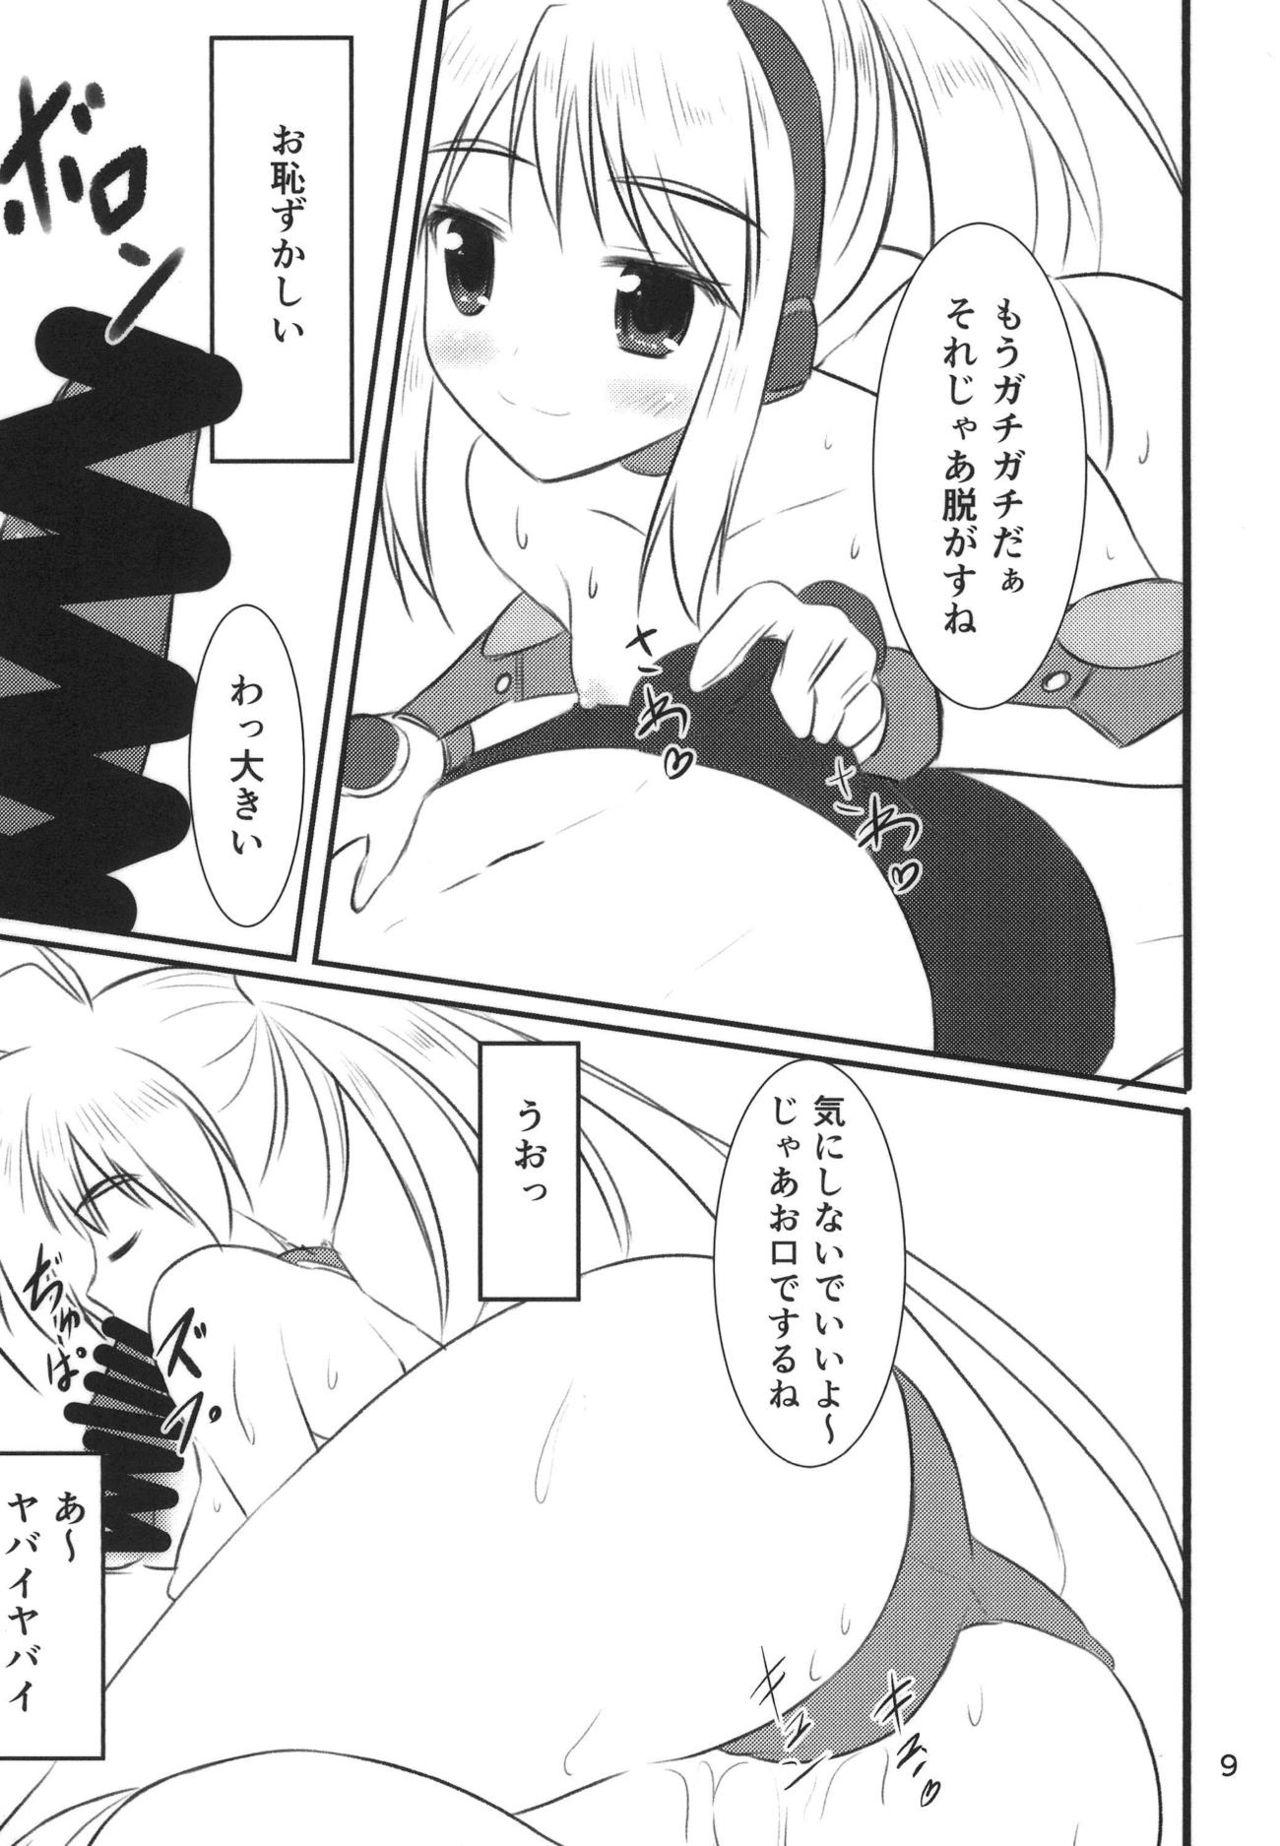 4some VR: Kagurazaka Yuna - Galaxy fraulein yuna Breast - Page 8